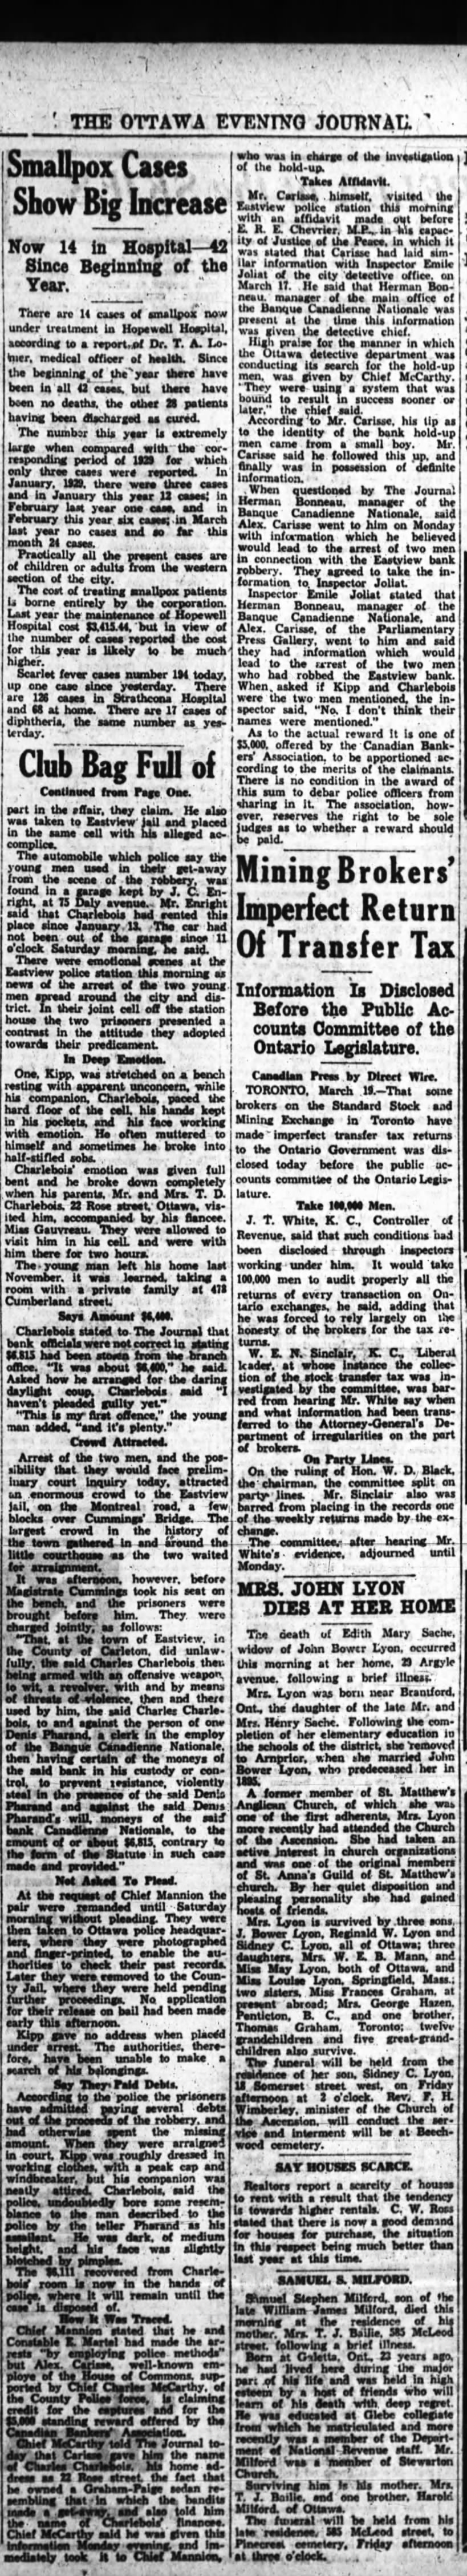 1930 04 19 -2 The Ottawa Tribune